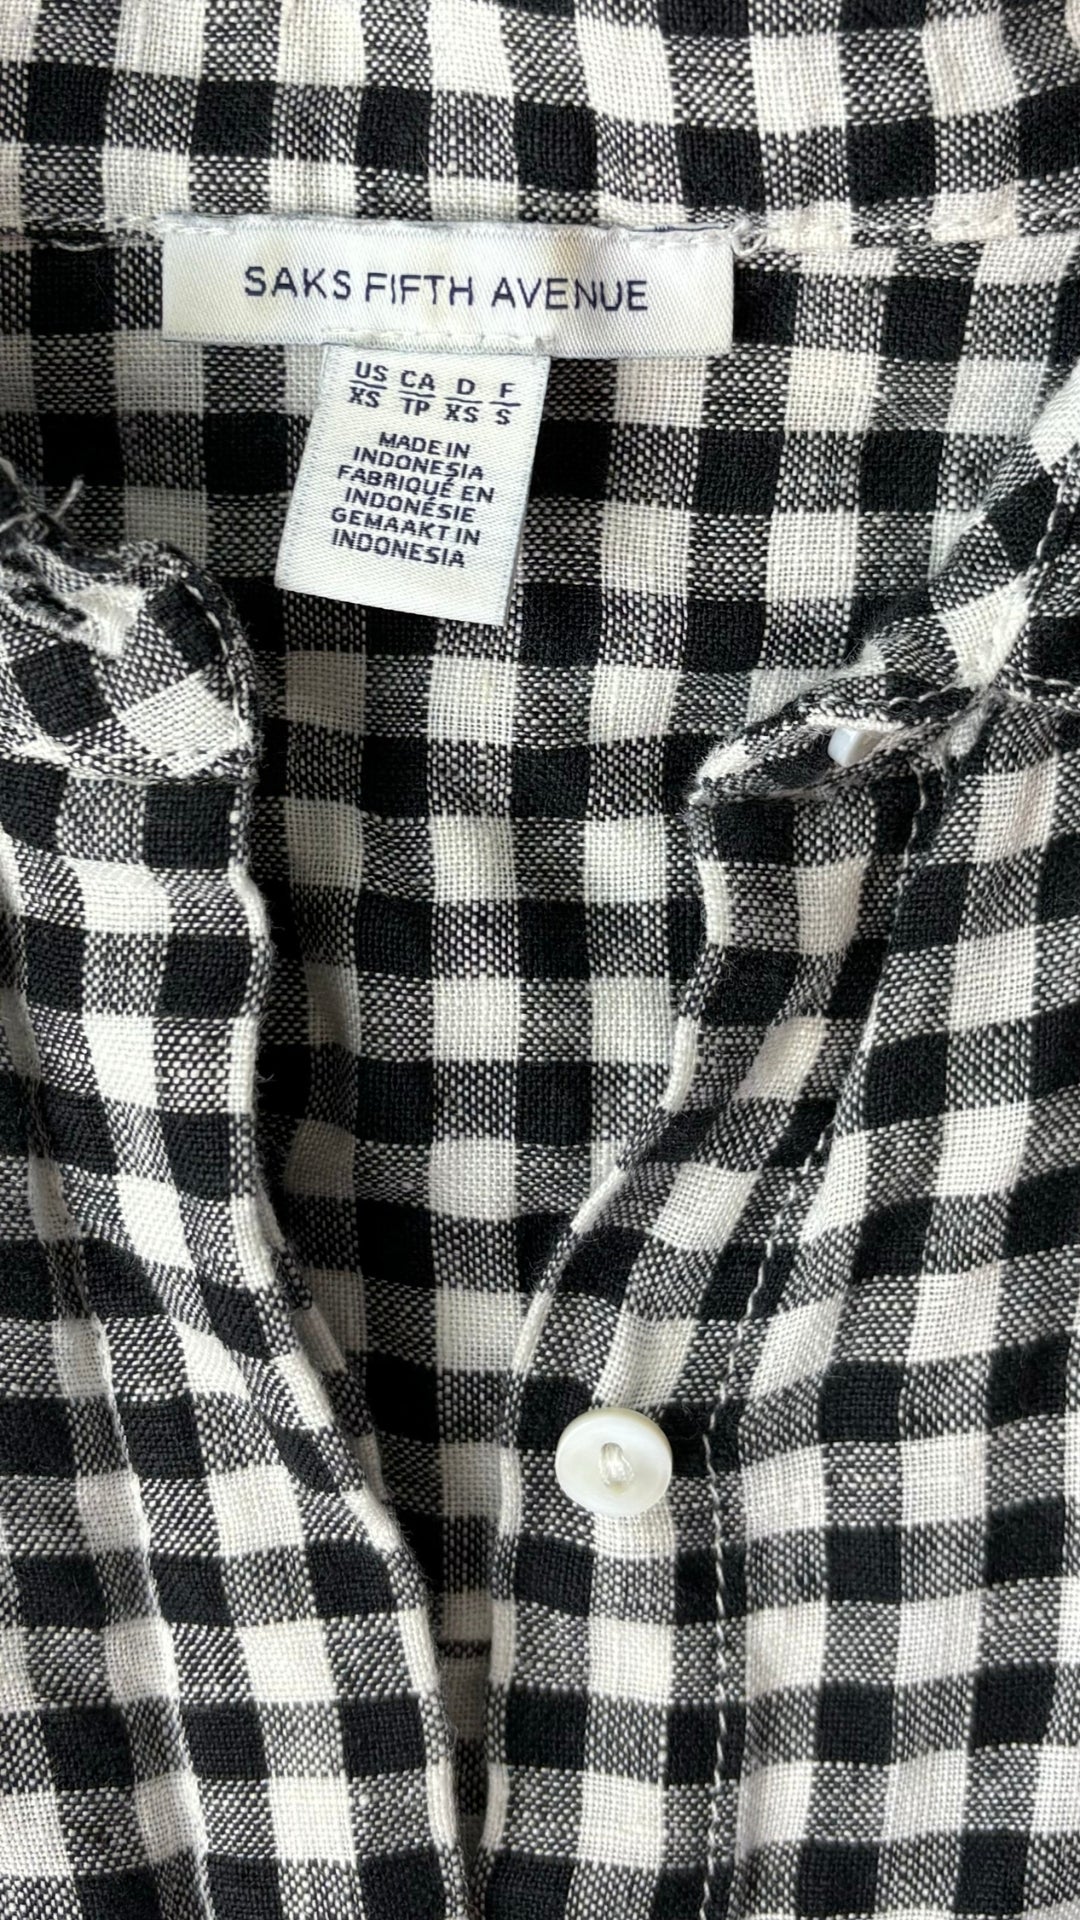 Chemisier ample vichy en lin Saks Fifth Avenue, taille xs/s. Vue de l'étiquette de marque.